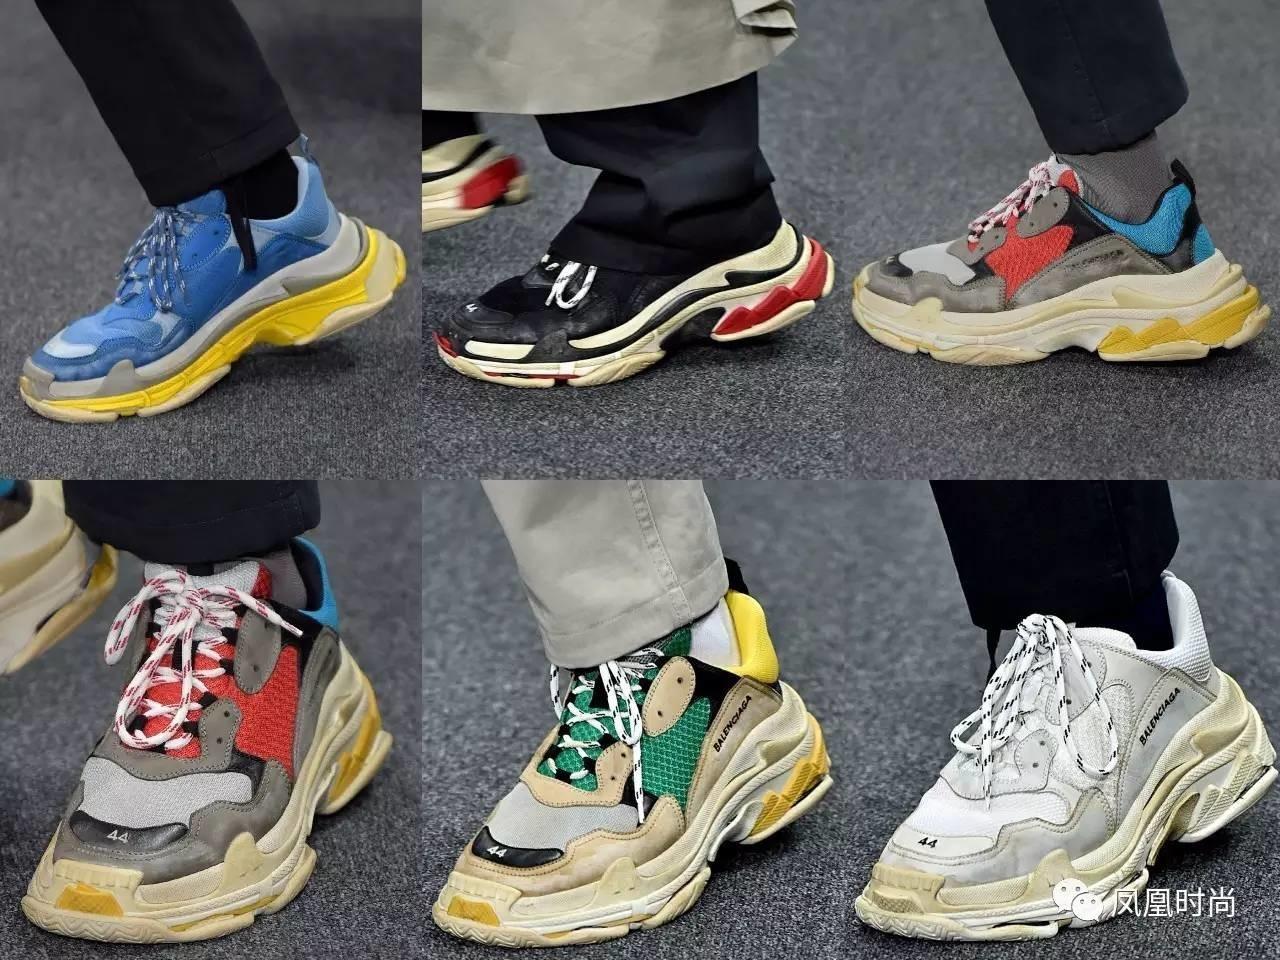 giay the thao ugly sneakers balenciaga triple s elle man 1 - 9 thiết kế giày thể thao “Xấu Lạ” đáng chú ý nhất hiện nay